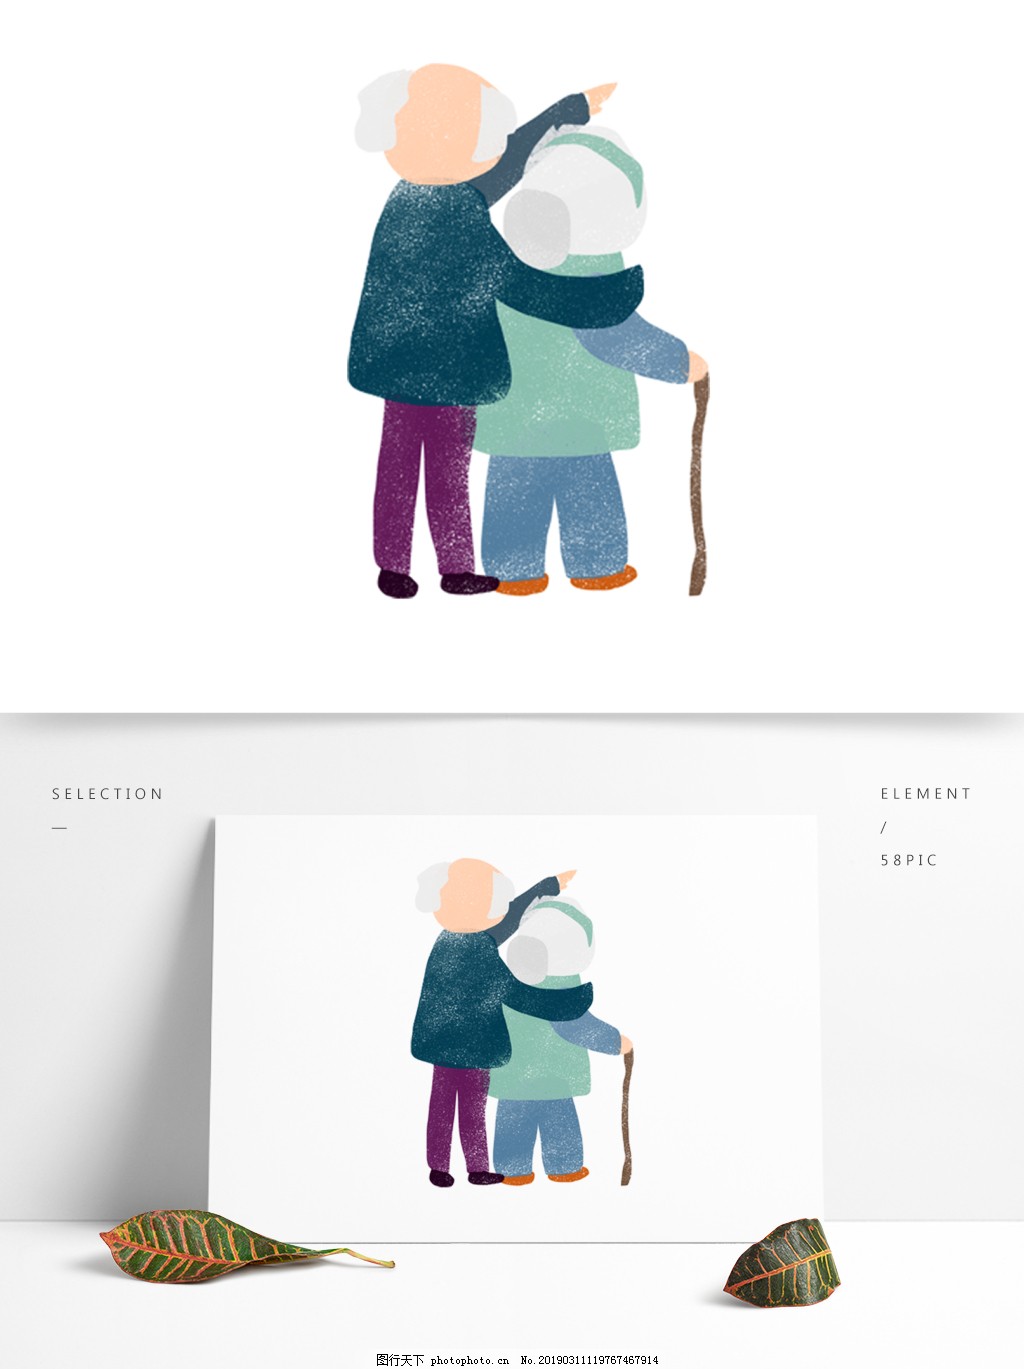 二个老人温馨图片,老两口幸福卡通图片 - 伤感说说吧